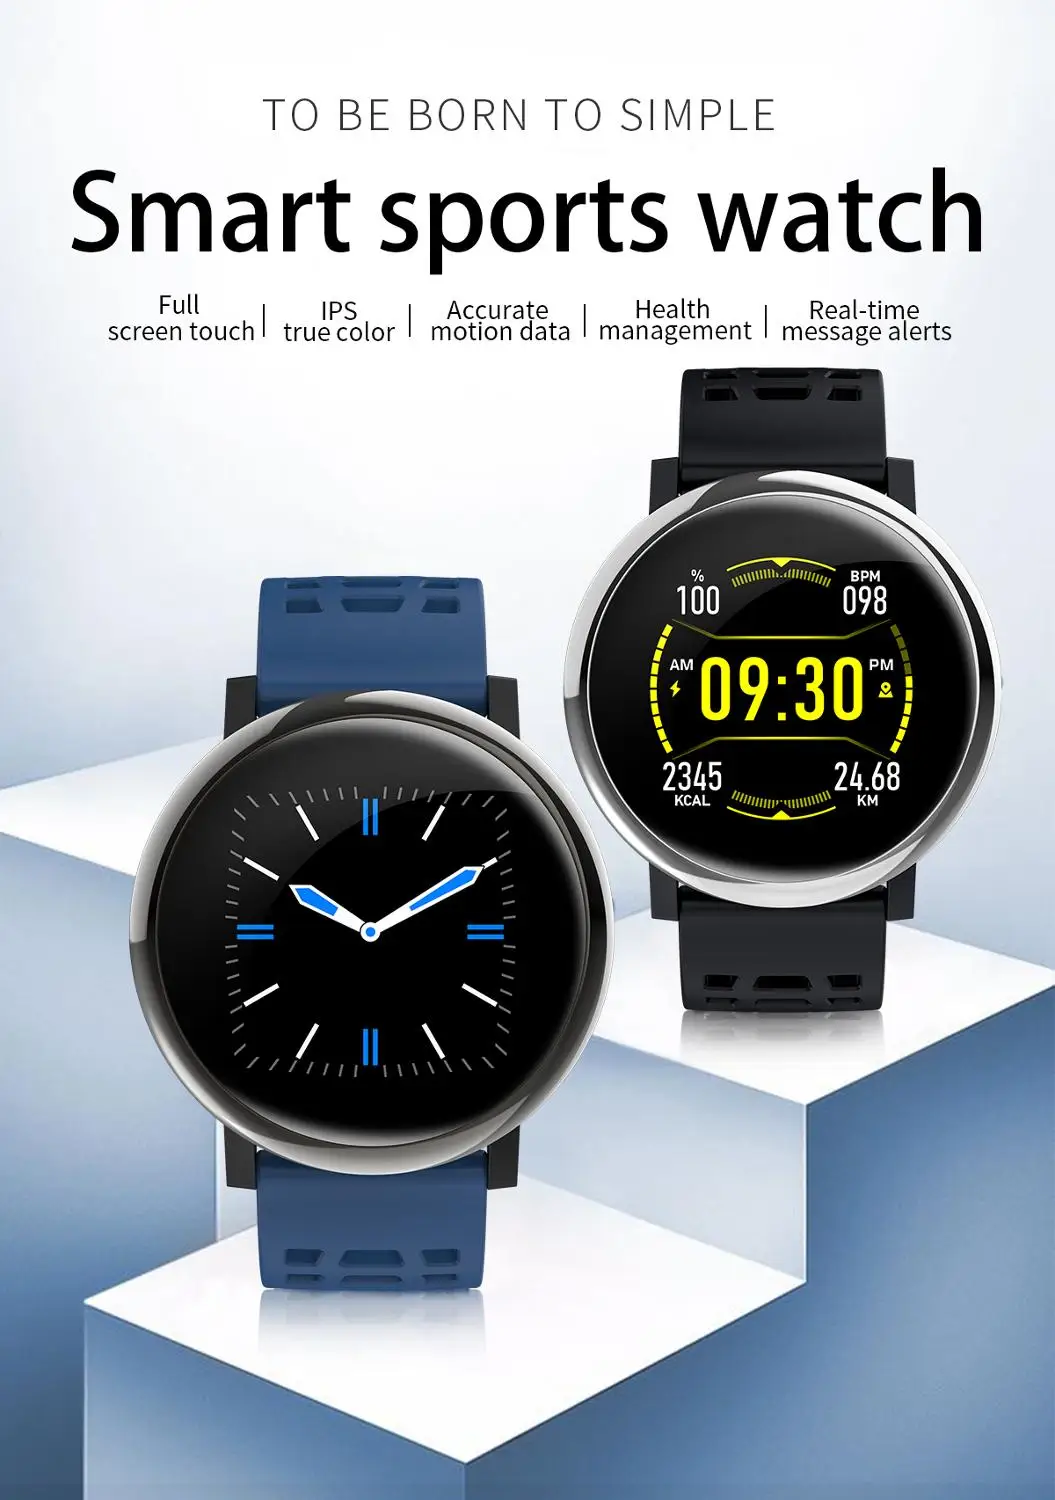 G30 SmartWatch телефон gps Bluetooth Smartwatch Водонепроницаемый Android 5,1 3g спортивные Смарт-часы для мужчин и женщин фитнес-трекер